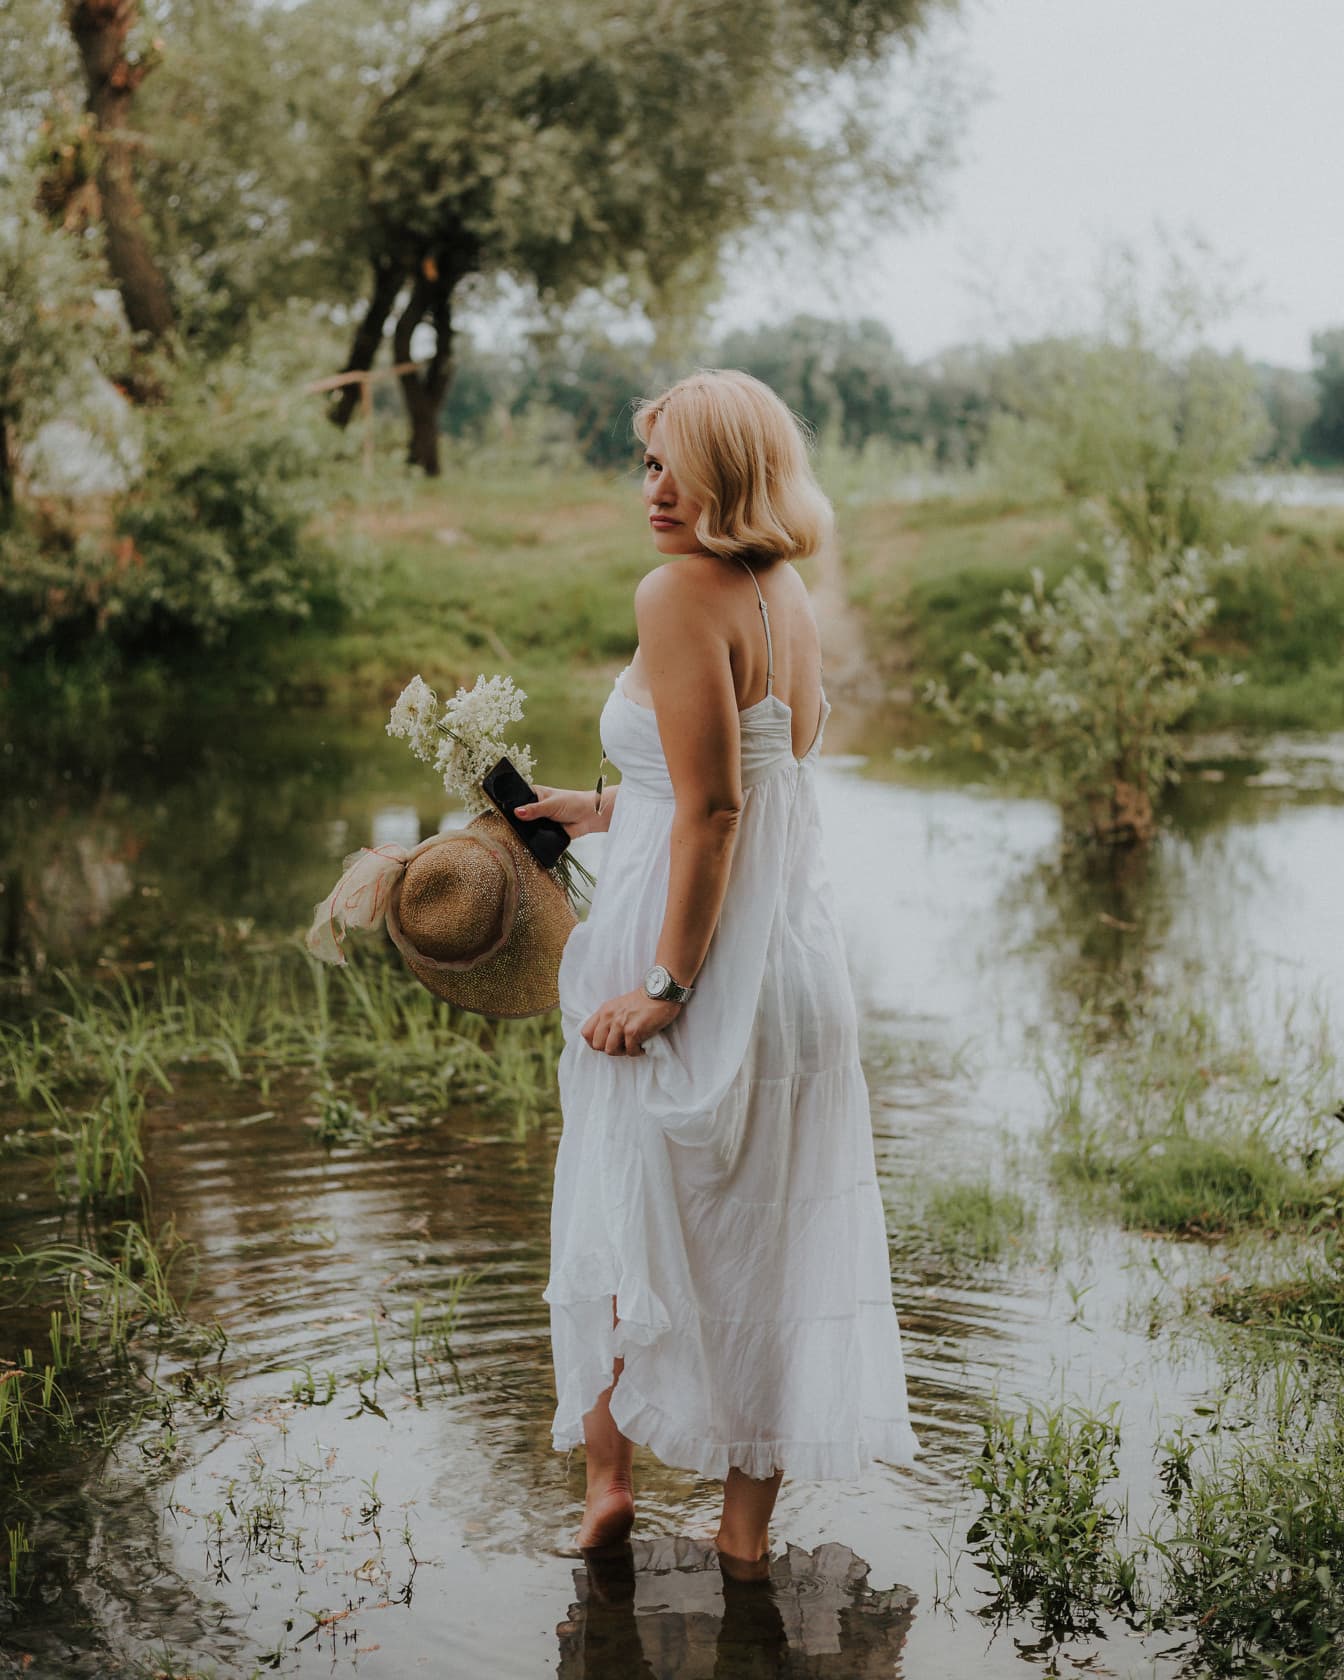 호수에 서 있는 흰색 드레스를 입은 화려한 맨발 금발